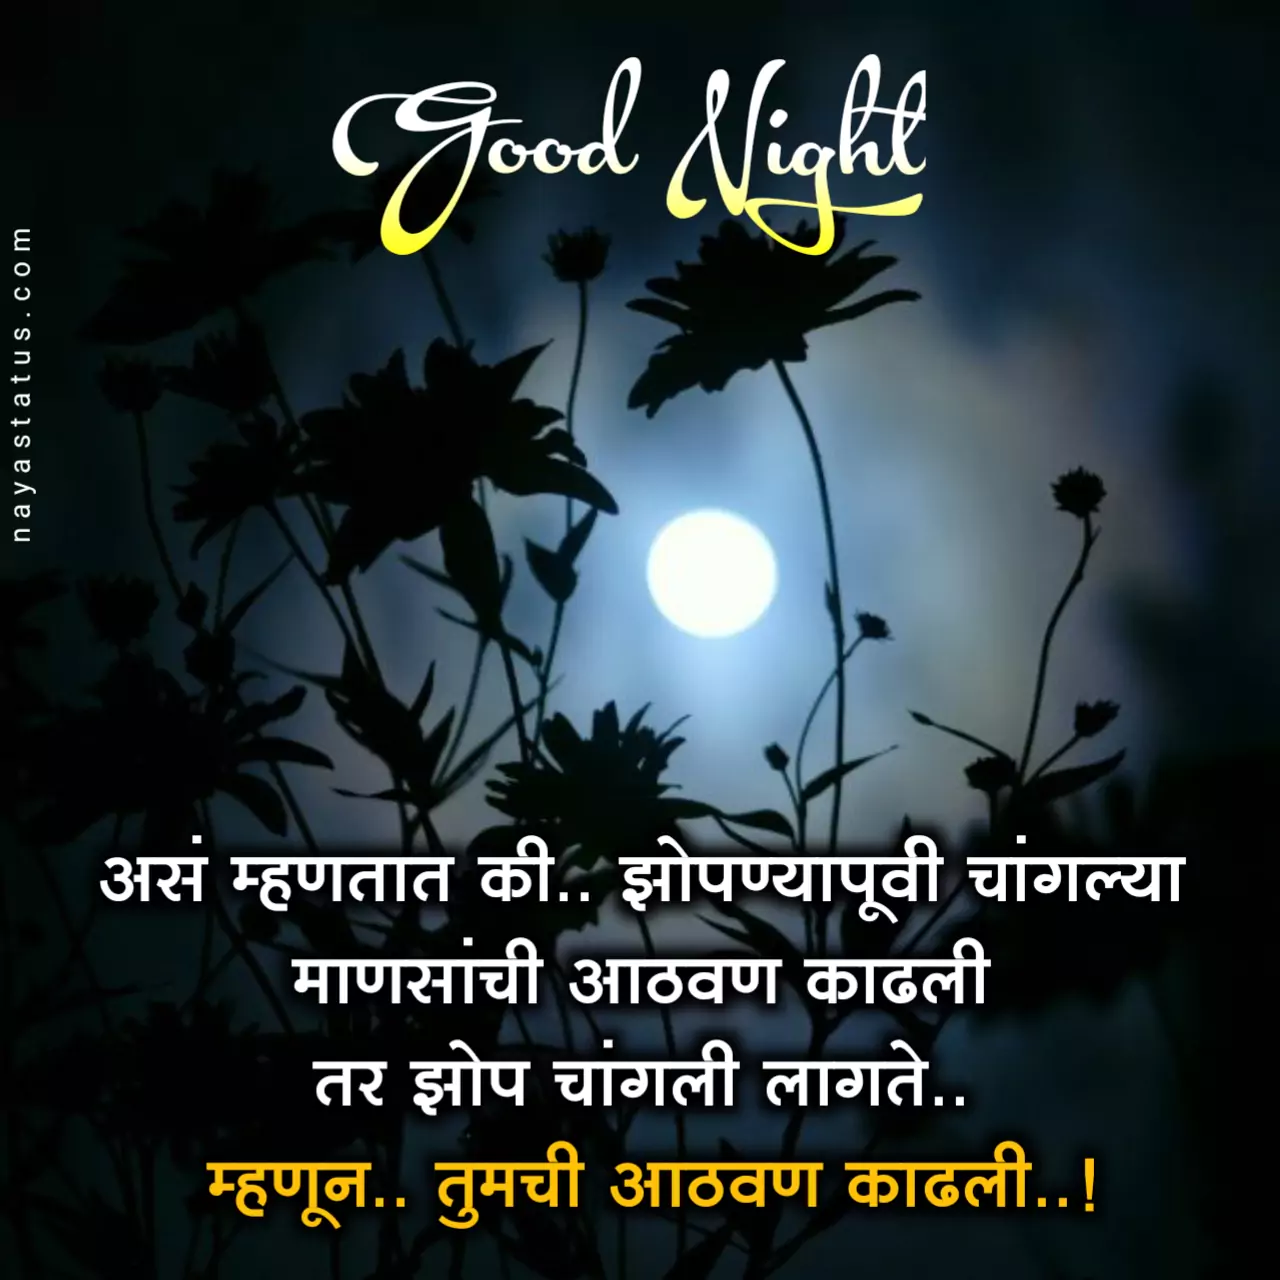 Good night quotes in marathi